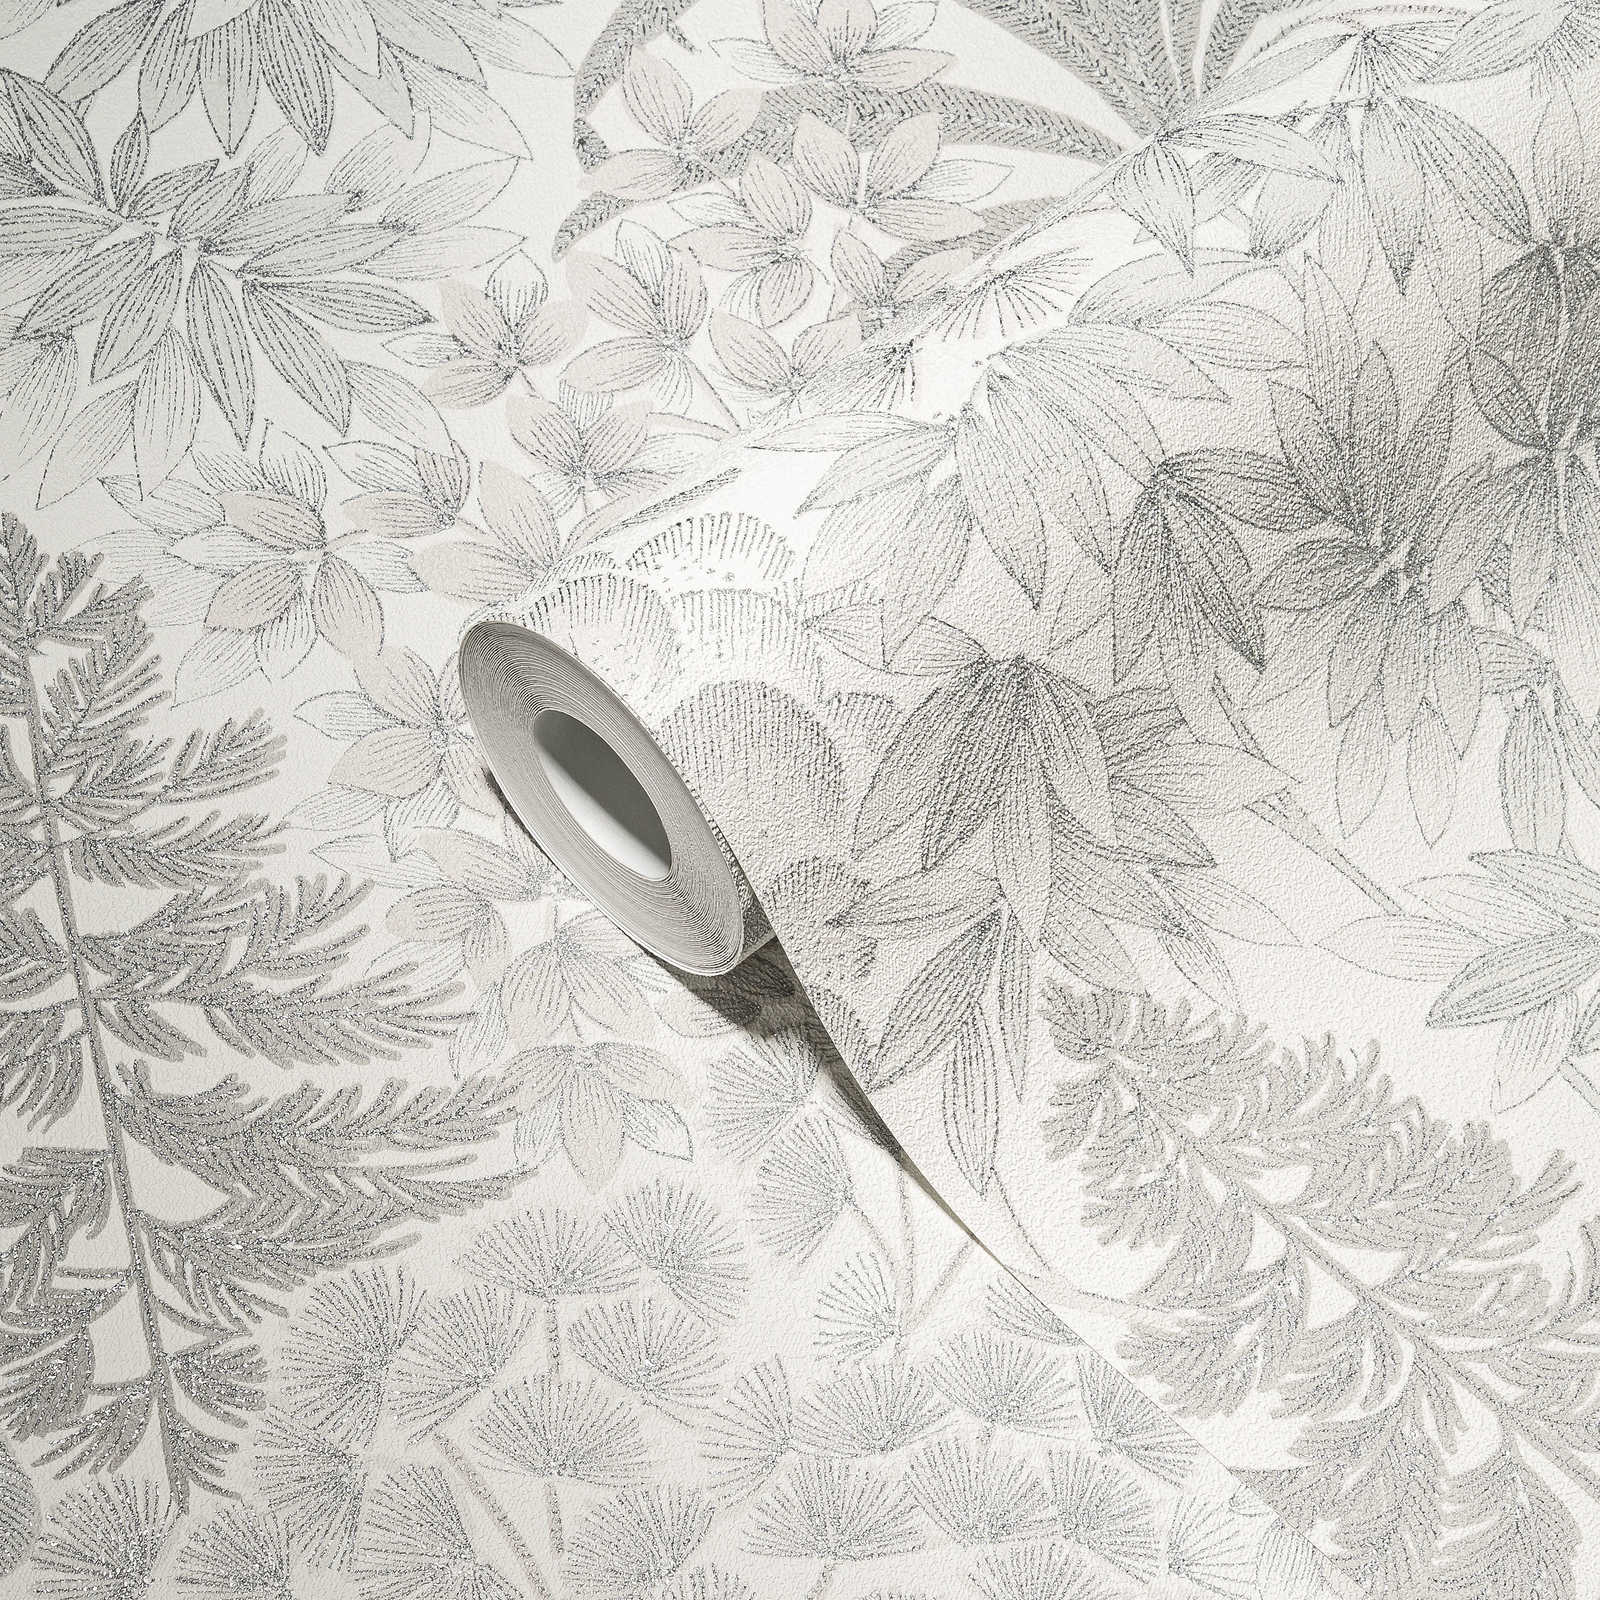             Carta da parati floreale leggermente lucida in un colore tenue - bianco, grigio, argento
        